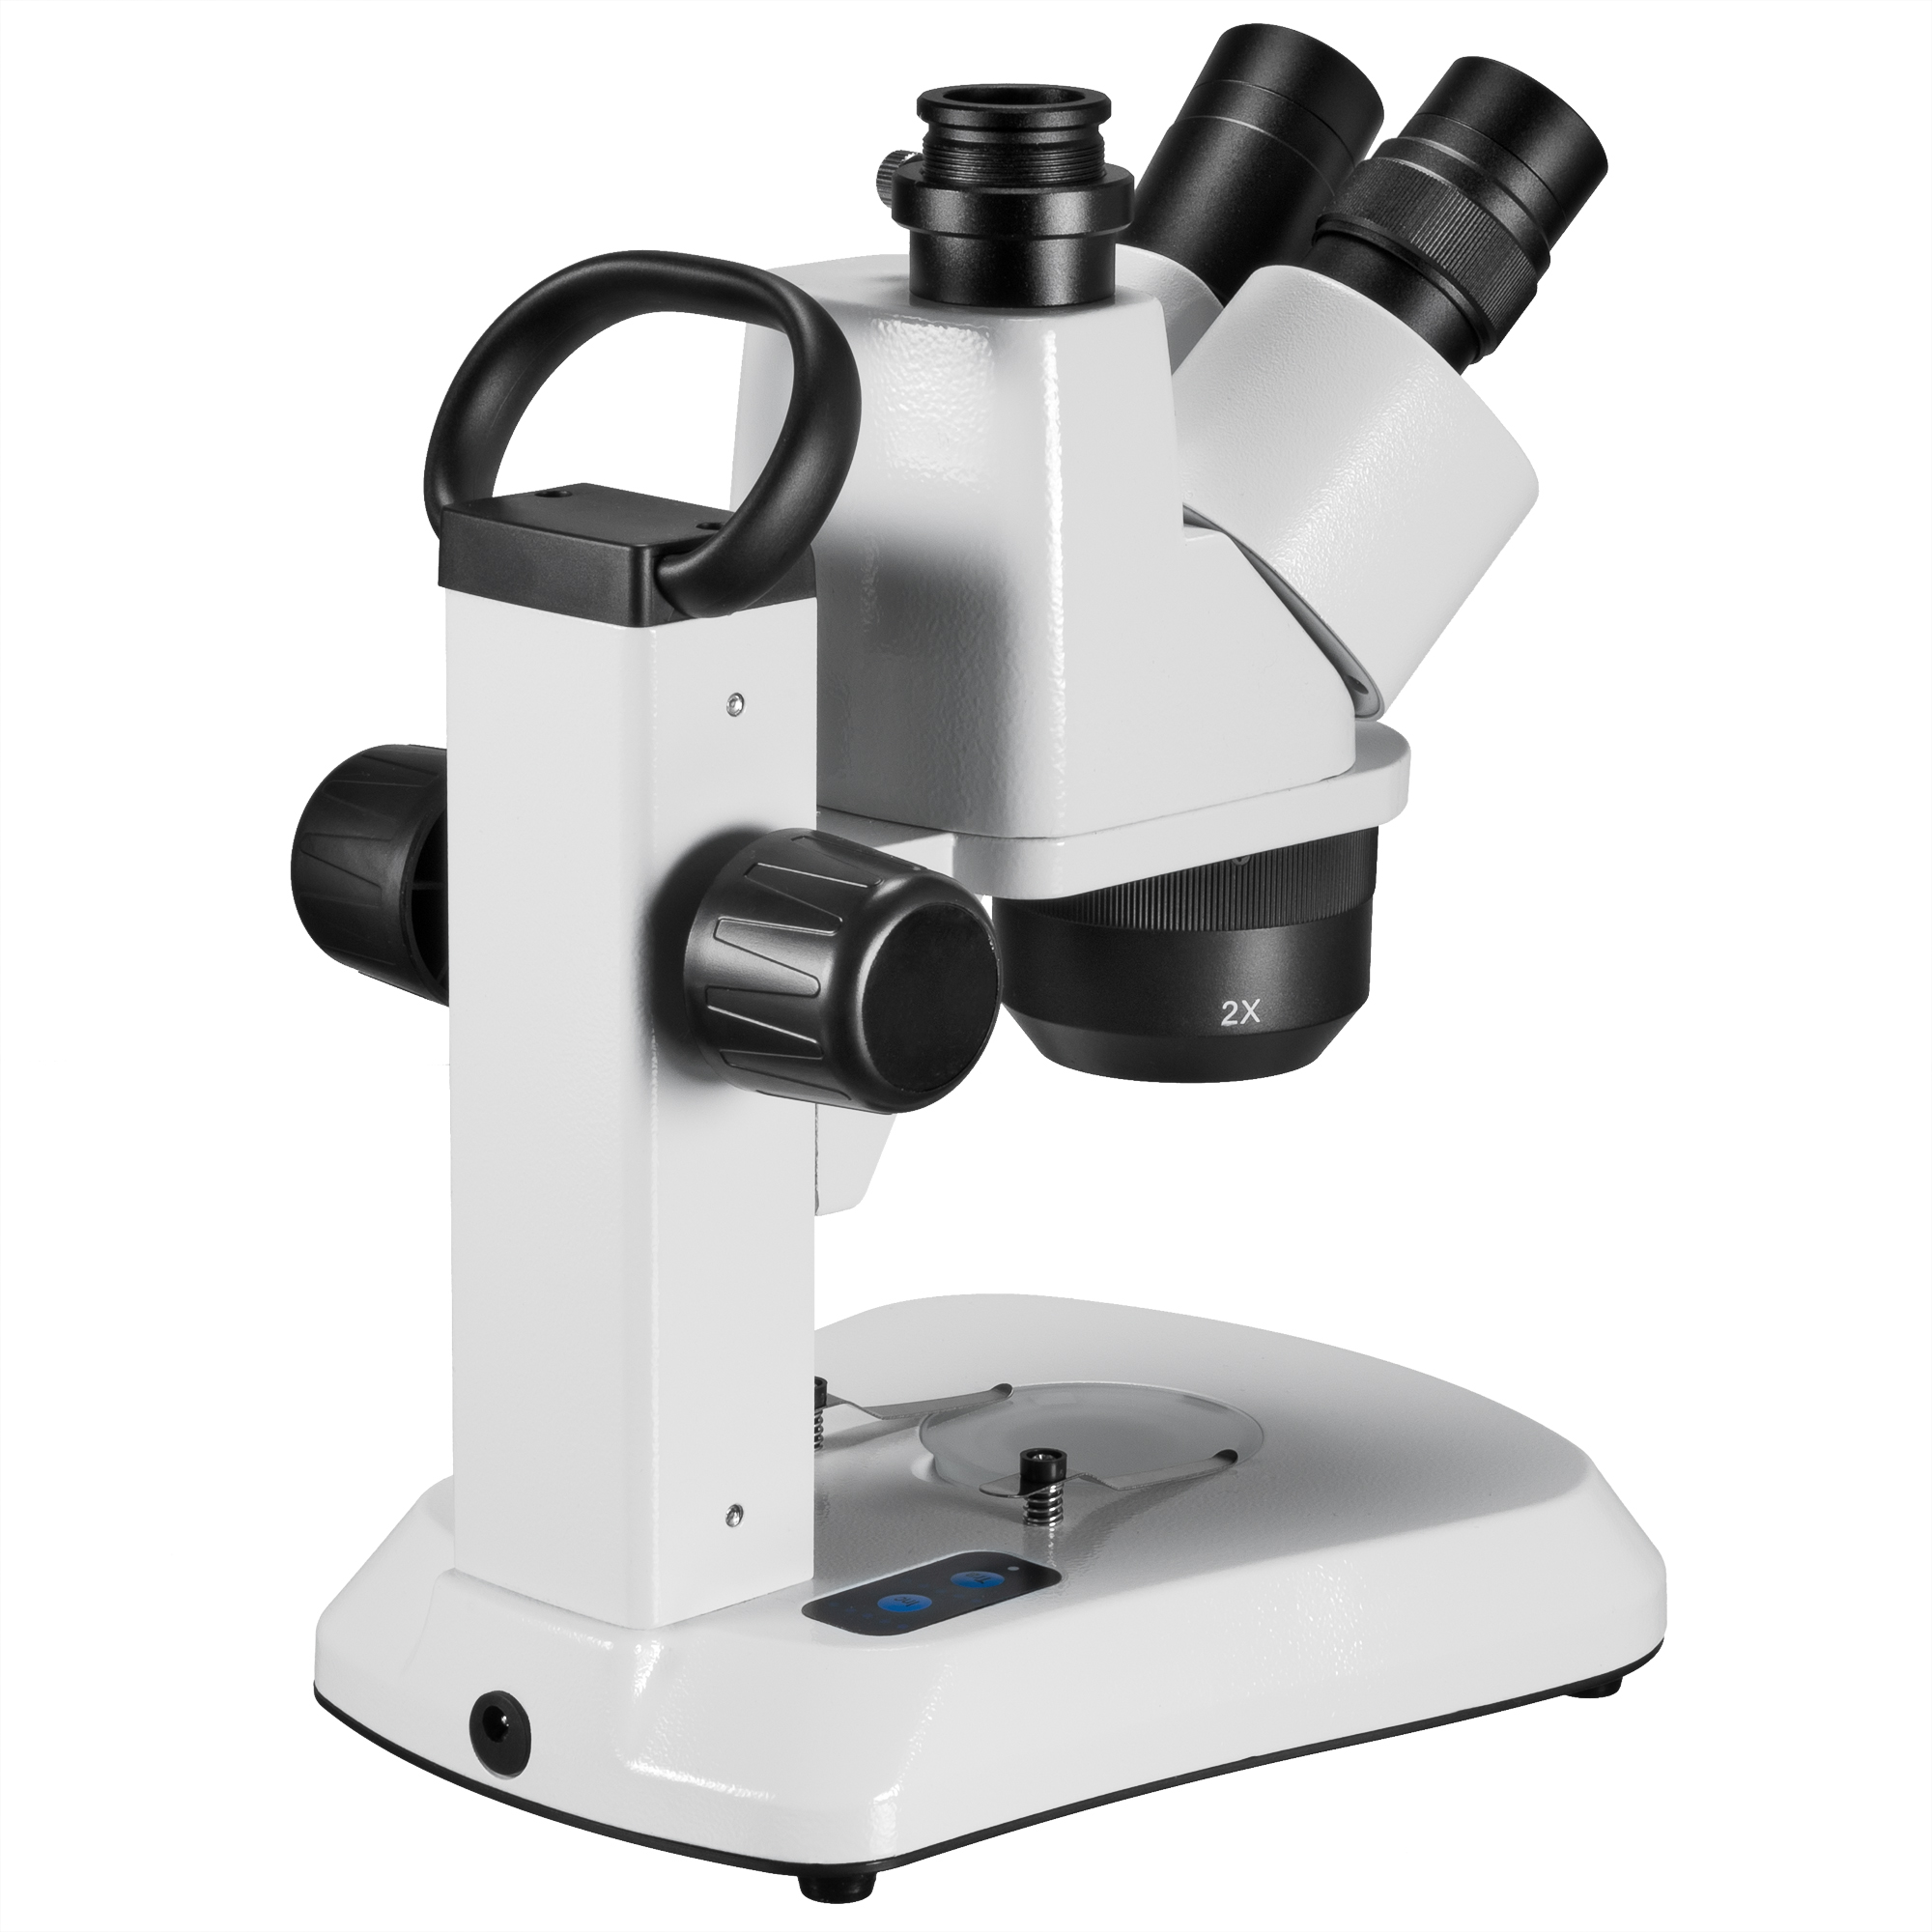 Microscopio stereo trinoculare BRESSER Analyth STR Trino 10x - 40x con luce trasmessa e incidente